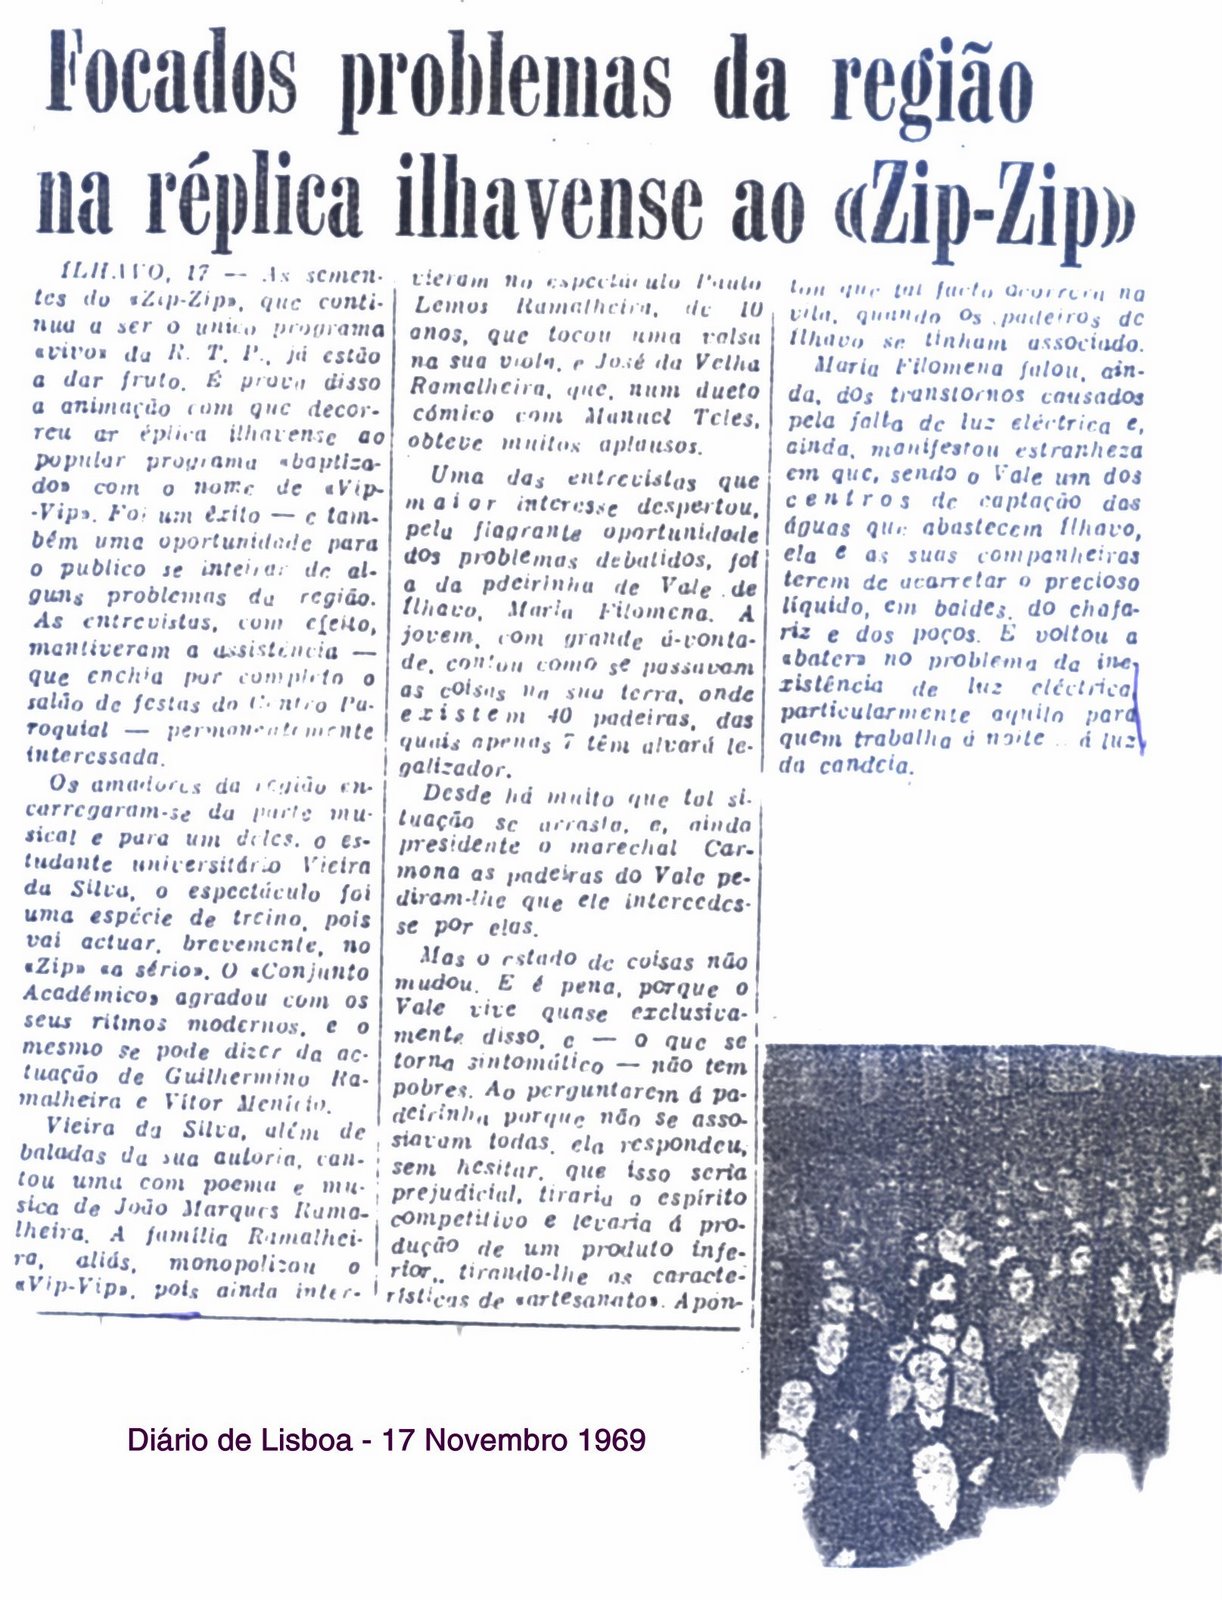 [1969-11-17_DiÃ¡rio+de+Lisboa_VIP-VIP.jpg]